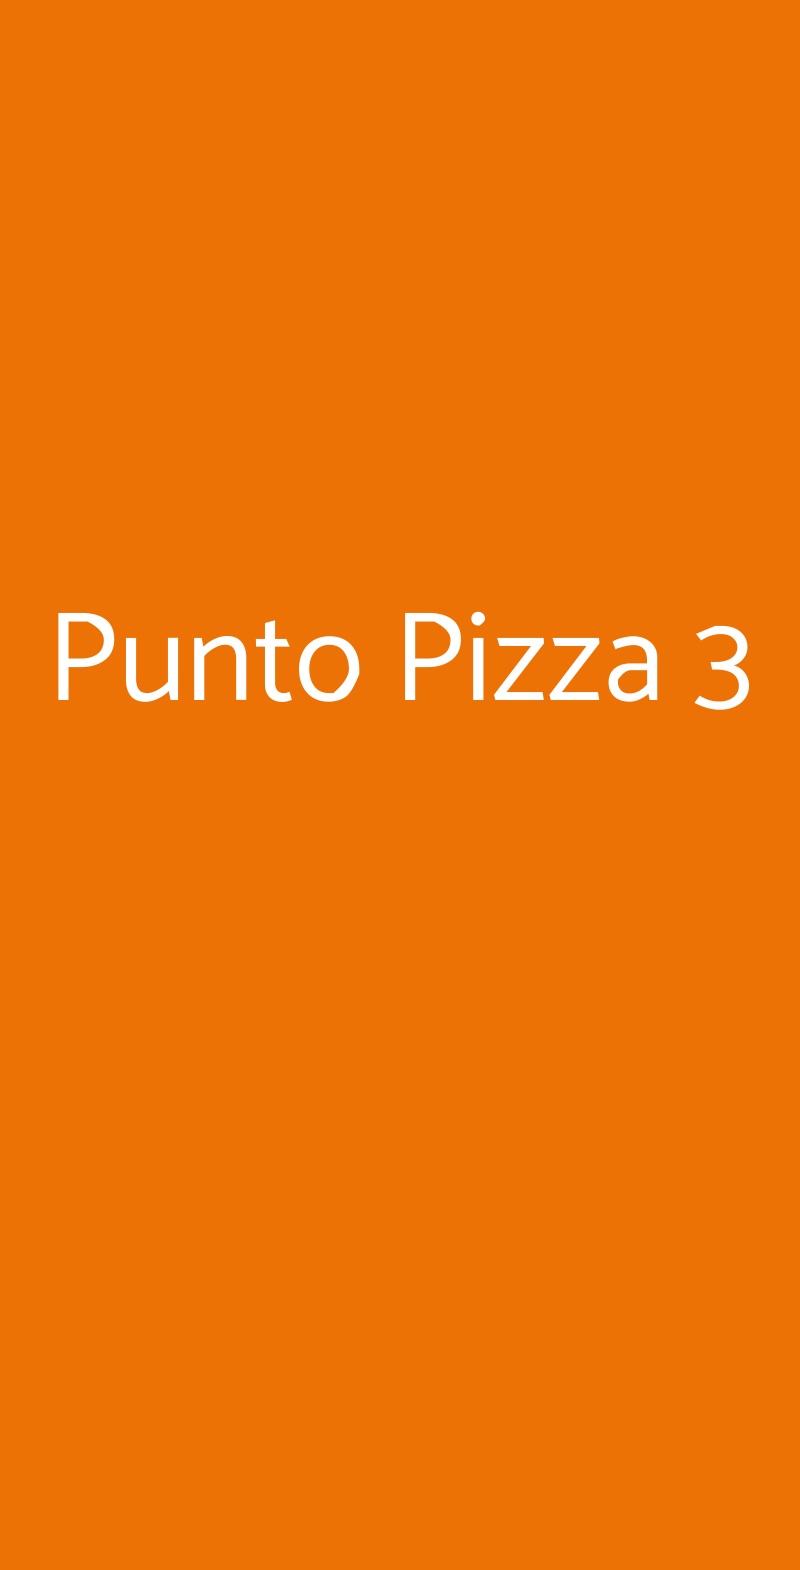 Punto Pizza 3 Faenza menù 1 pagina